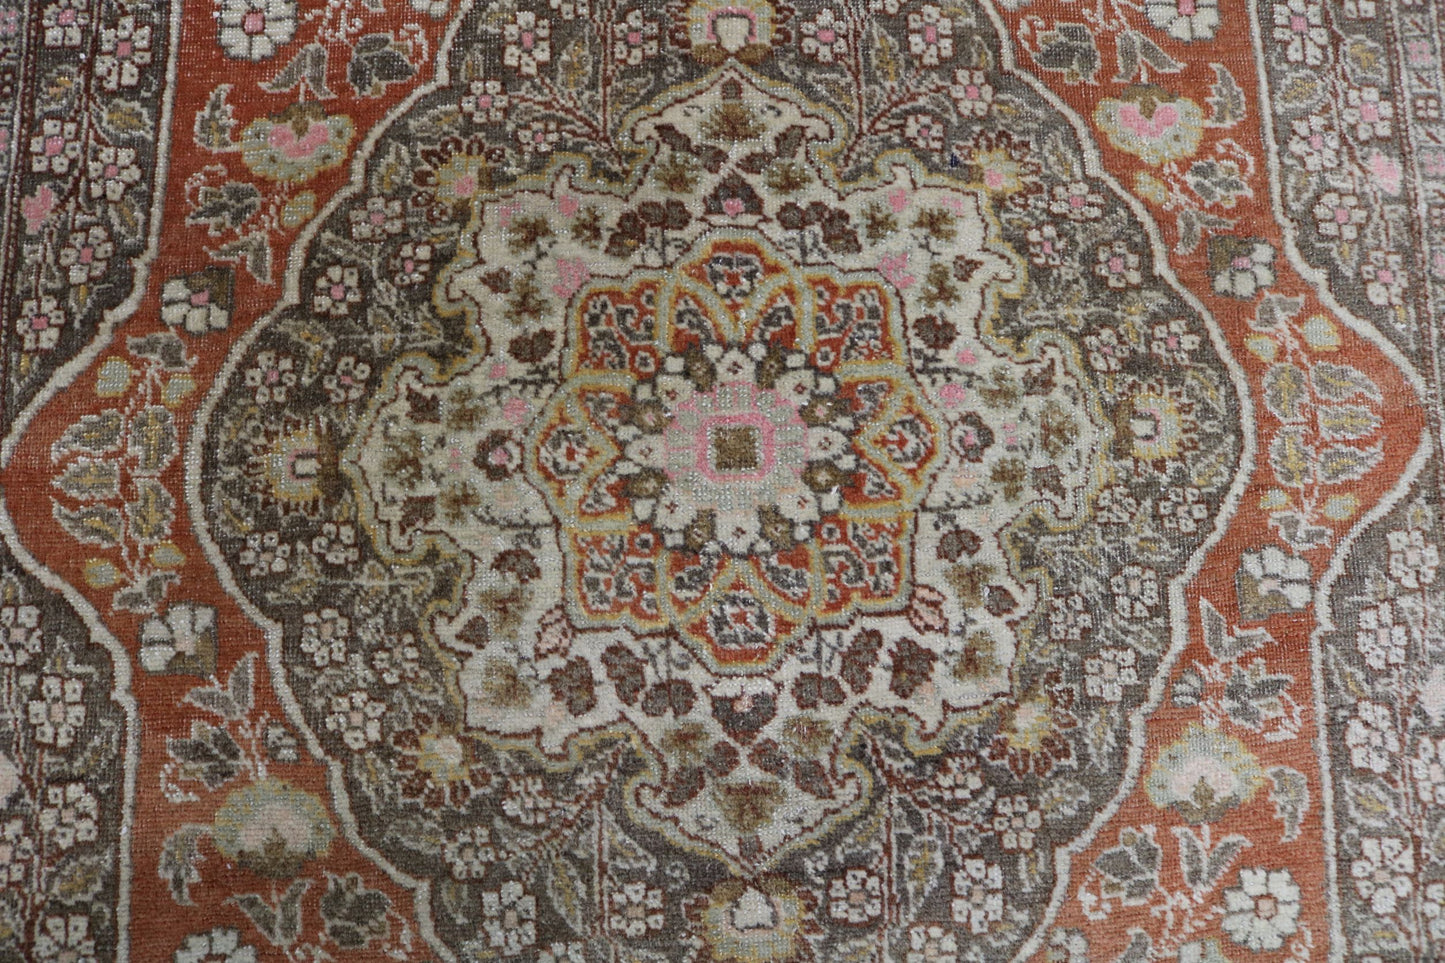 Wonderful Old Antique Haj-Jalili Tabriz rug - Hakiemie Rug Gallery